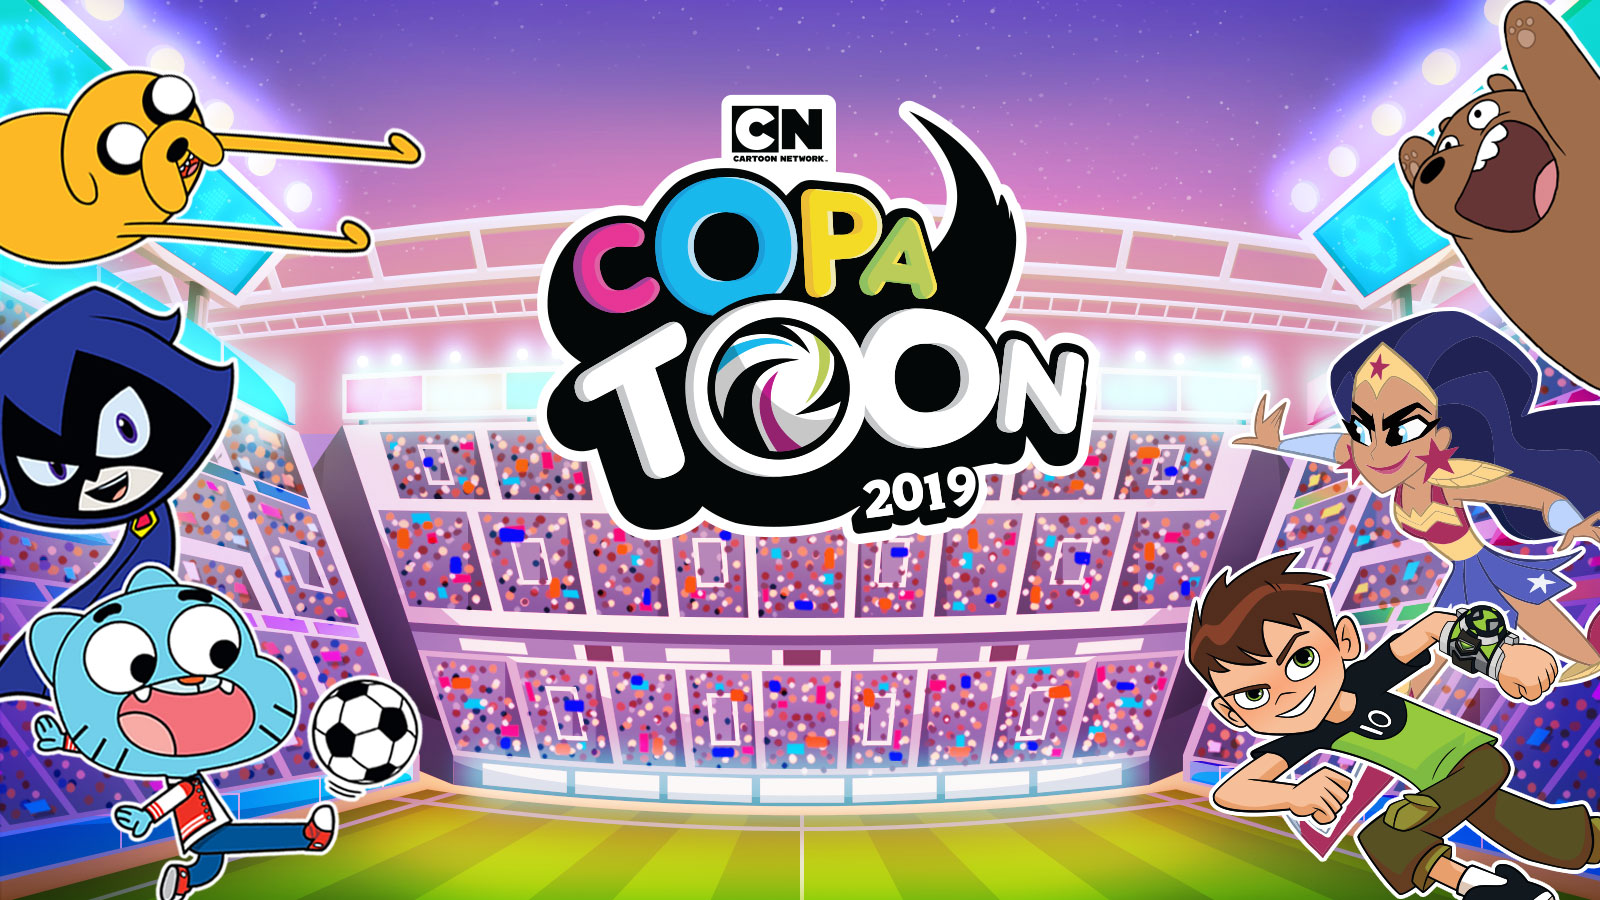 Alegre Desbordamiento Indefinido Copa Toon 2019 | Cartoon Network